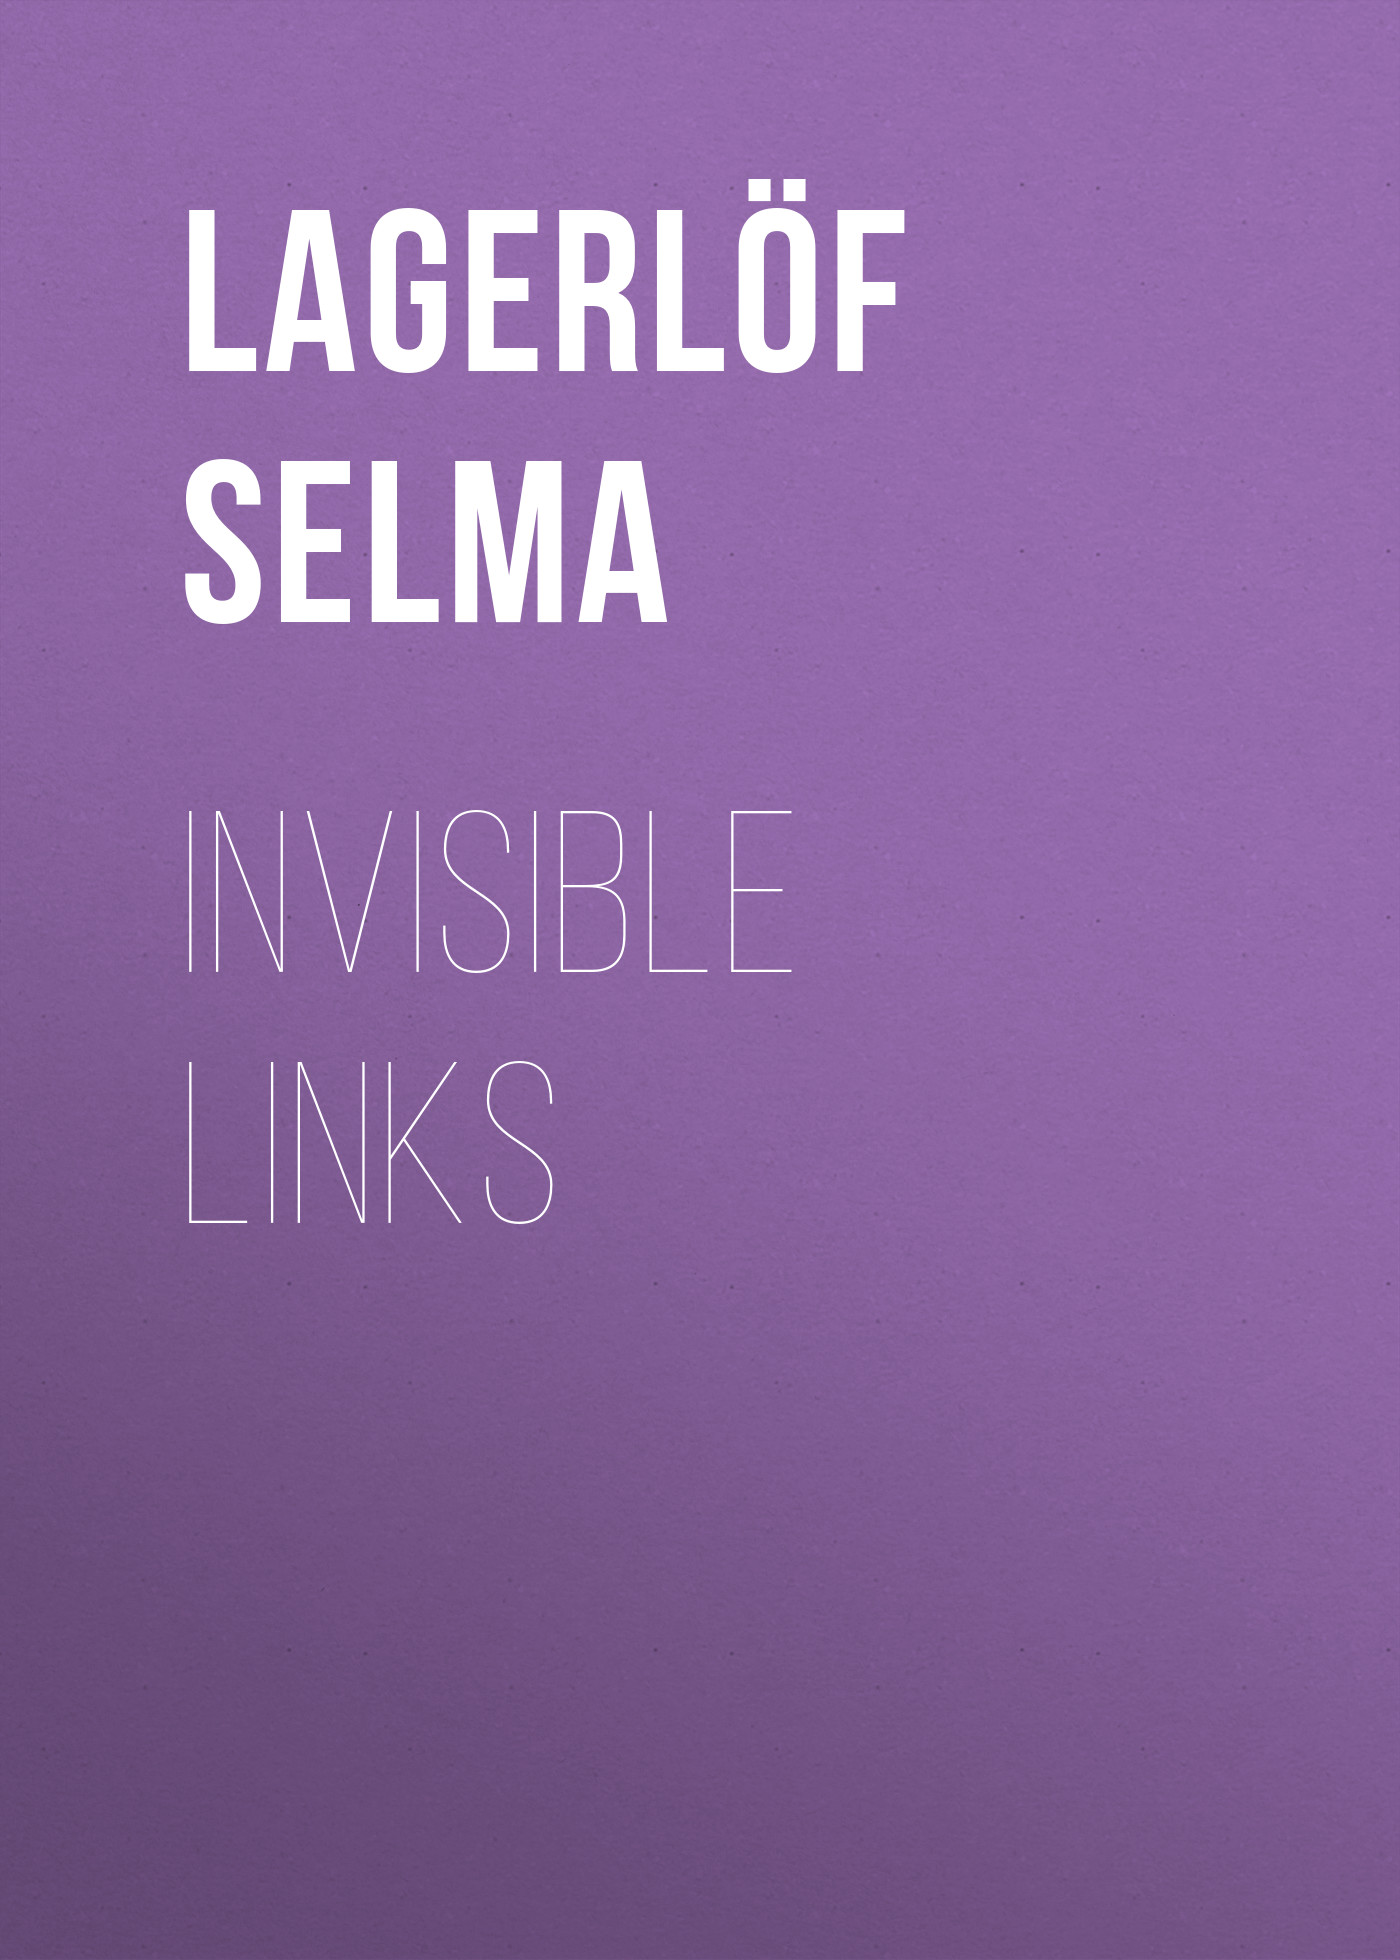 Книга Invisible Links из серии , созданная Selma Lagerlöf, может относится к жанру Зарубежная старинная литература, Зарубежная классика. Стоимость электронной книги Invisible Links с идентификатором 25229708 составляет 0 руб.